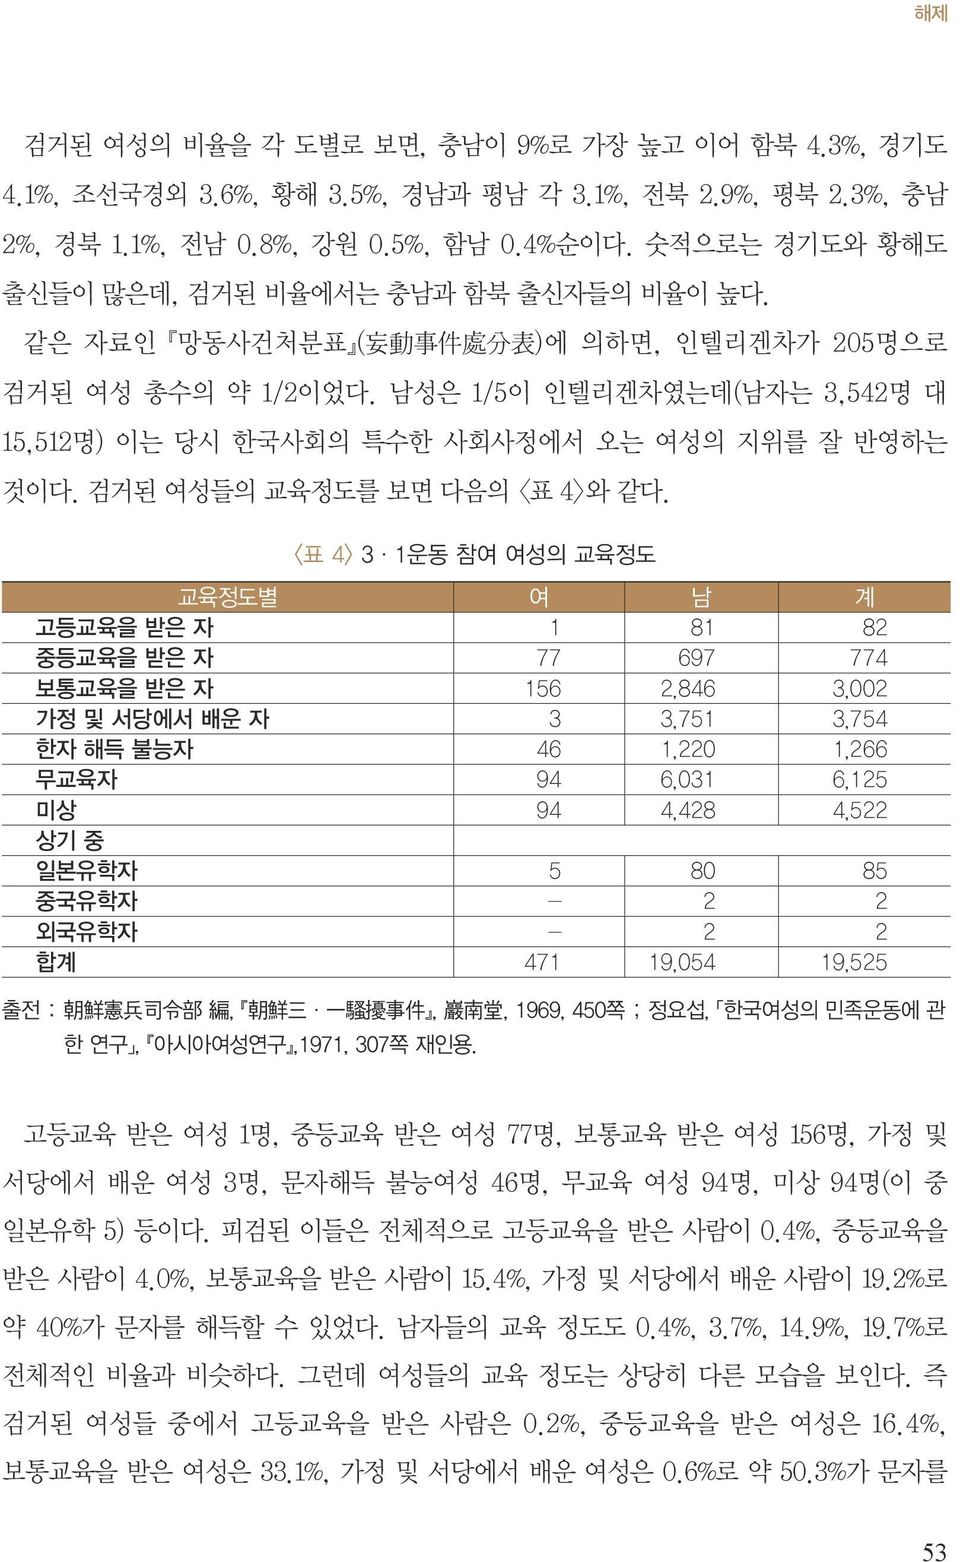 남성은 1/5이 인텔리겐차였는데(남자는 3,542명 대 15,512명) 이는 당시 한국사회의 특수한 사회사정에서 오는 여성의 지위를 잘 반영하는 것이다. 검거된 여성들의 교육정도를 보면 다음의 <표 4>와 같다.